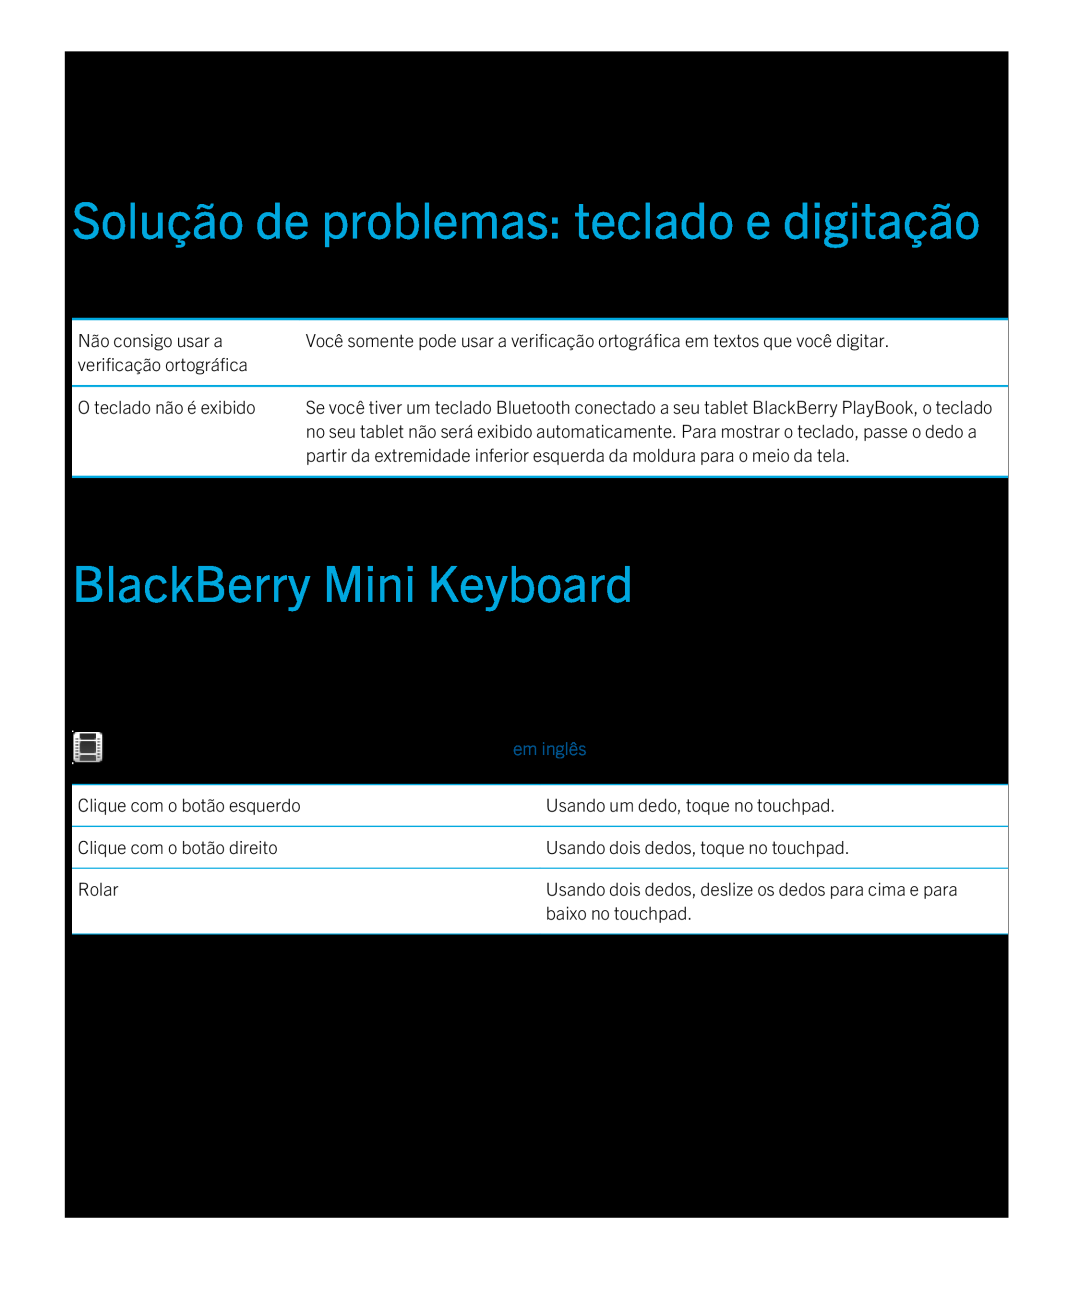 Blackberry 2.0.1 Solução de problemas teclado e digitação, BlackBerry Mini Keyboard, Problema, Possível causa ou solução 